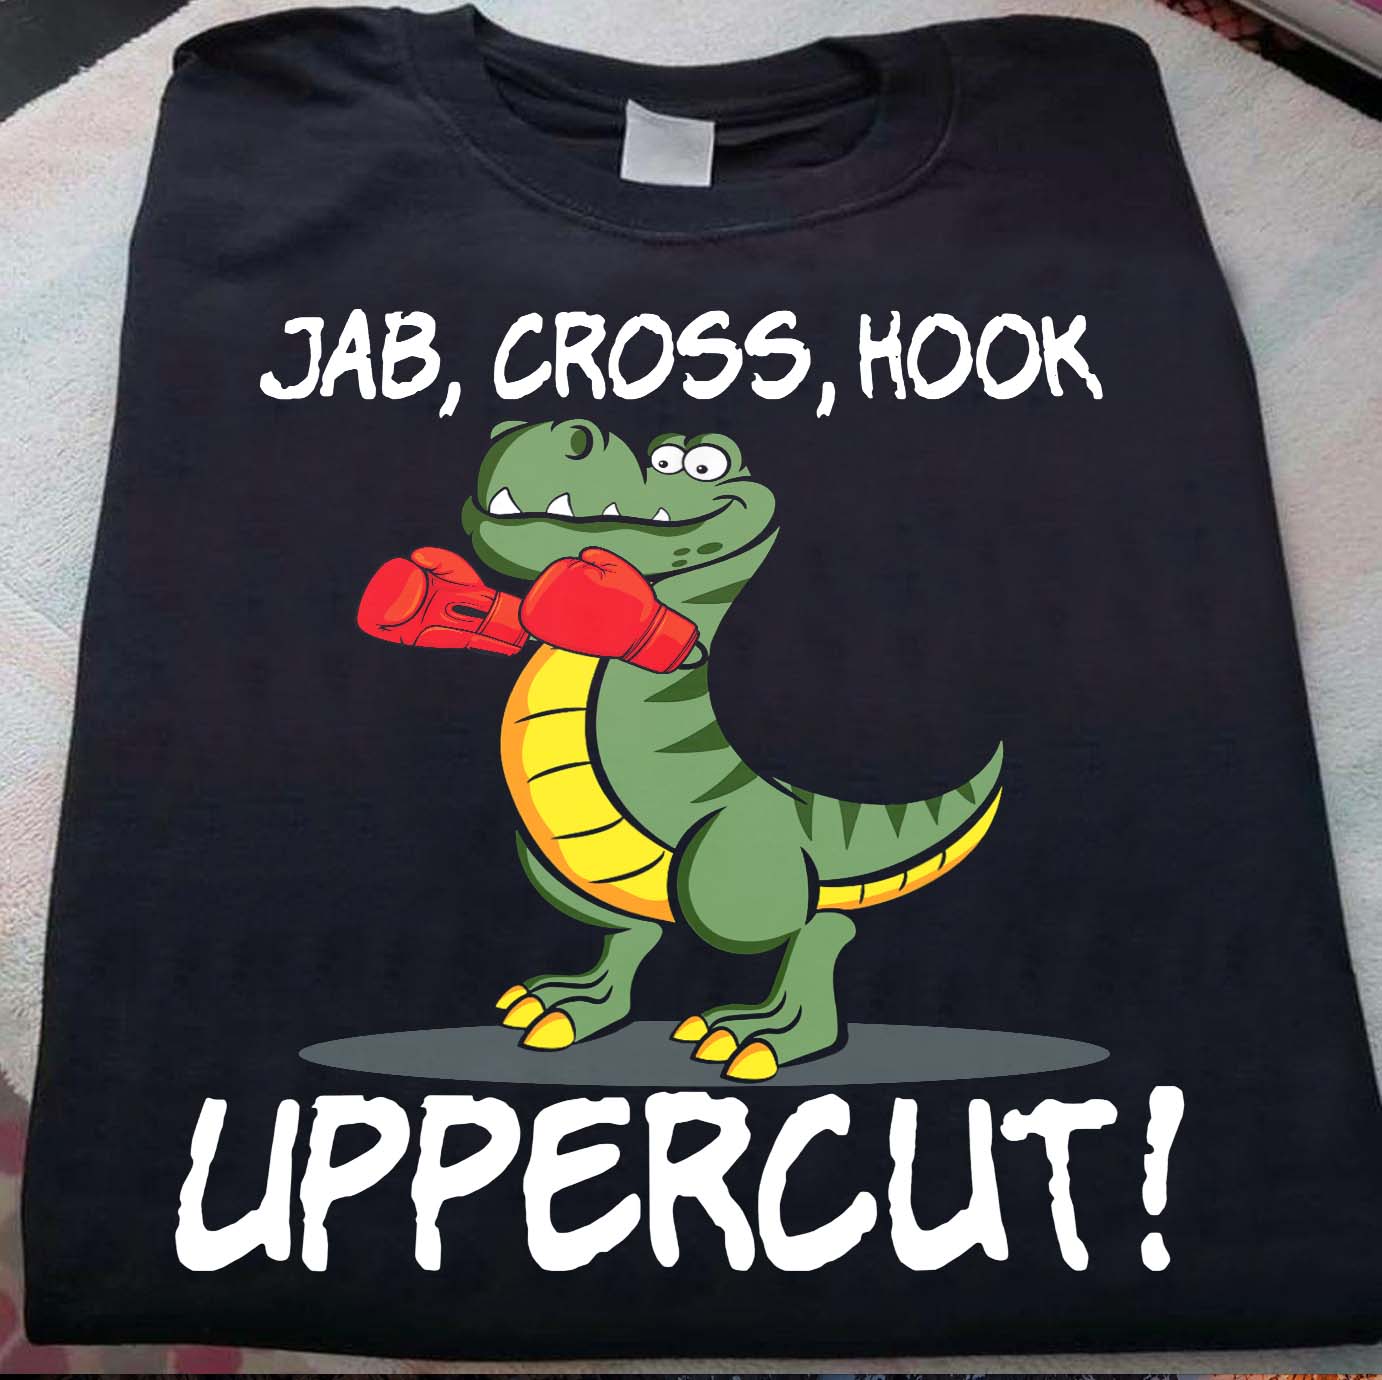 Jab, cross, hook uppercut - Dinosaur love boxing